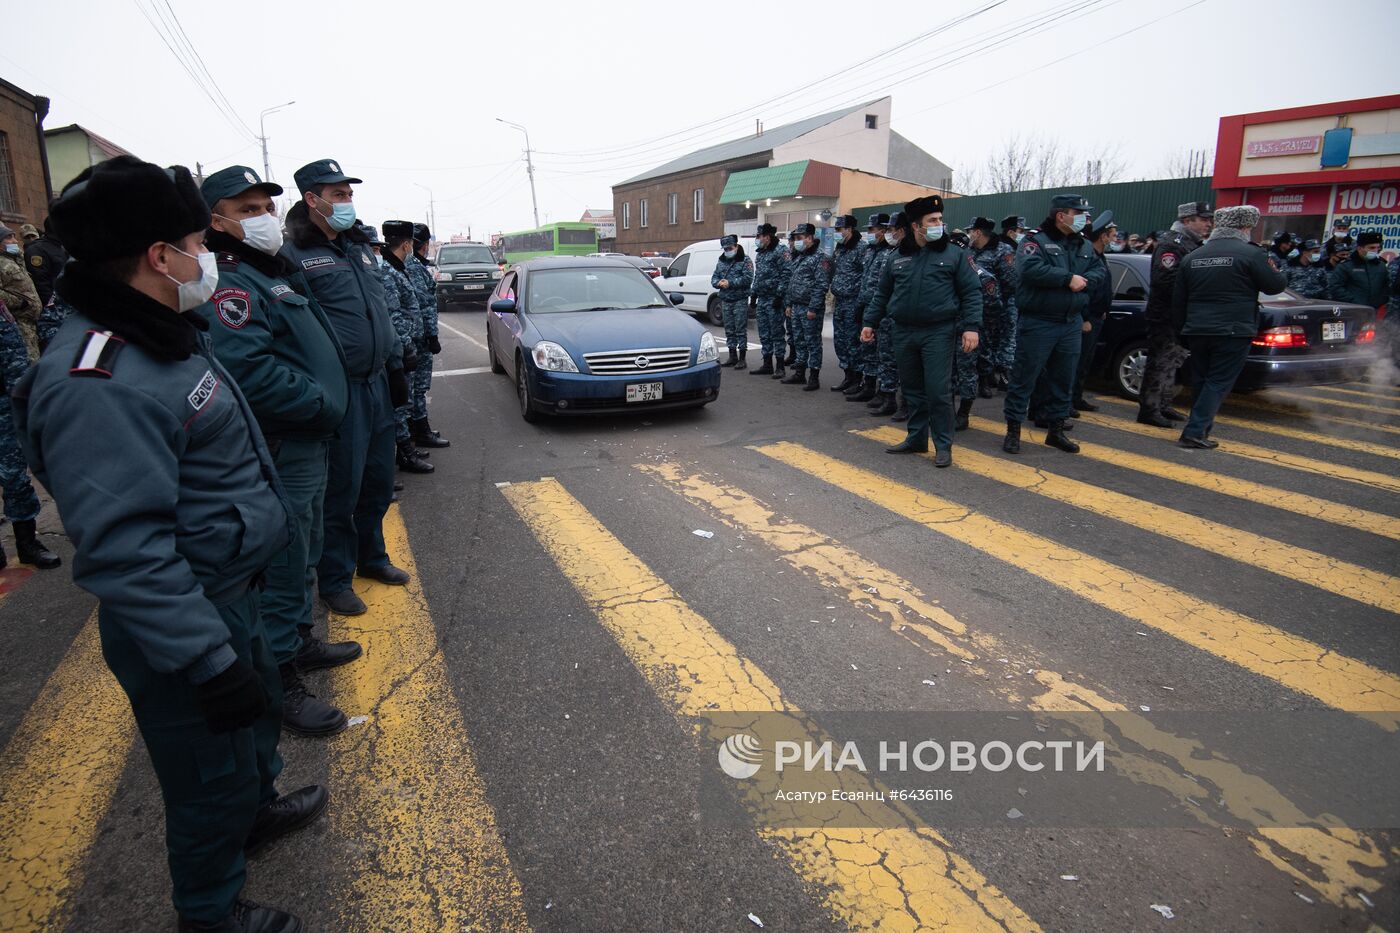 Противники Пашиняна попытались сорвать его визит в Москву